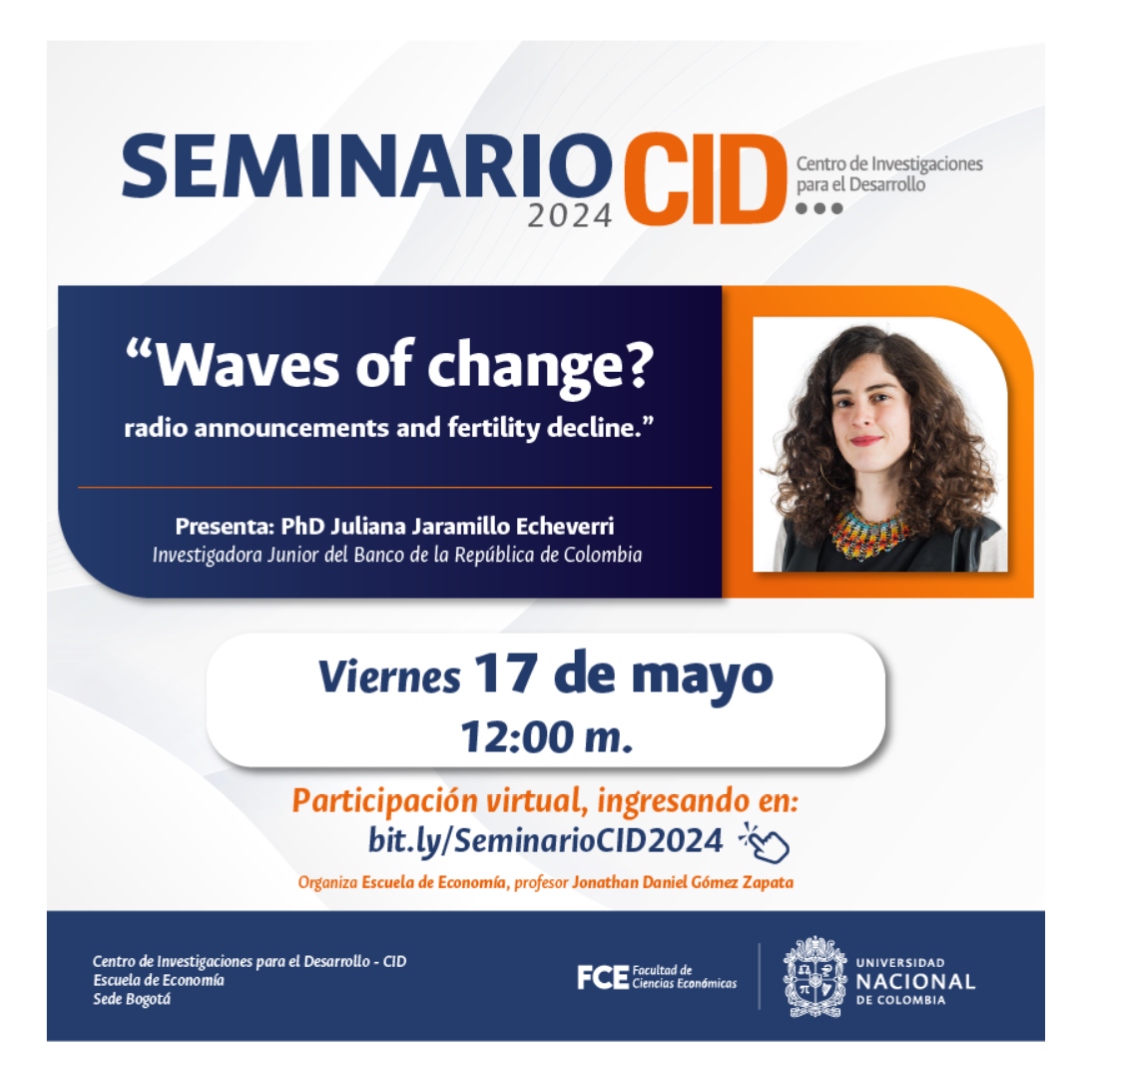 Mañana al medio día estaré en el seminario CID de la Universidad Nacional presentando mi trabajo sobre una campaña de radio de Profamilia y sus efectos en la fecundidad en Colombia. Allá nos vemos!